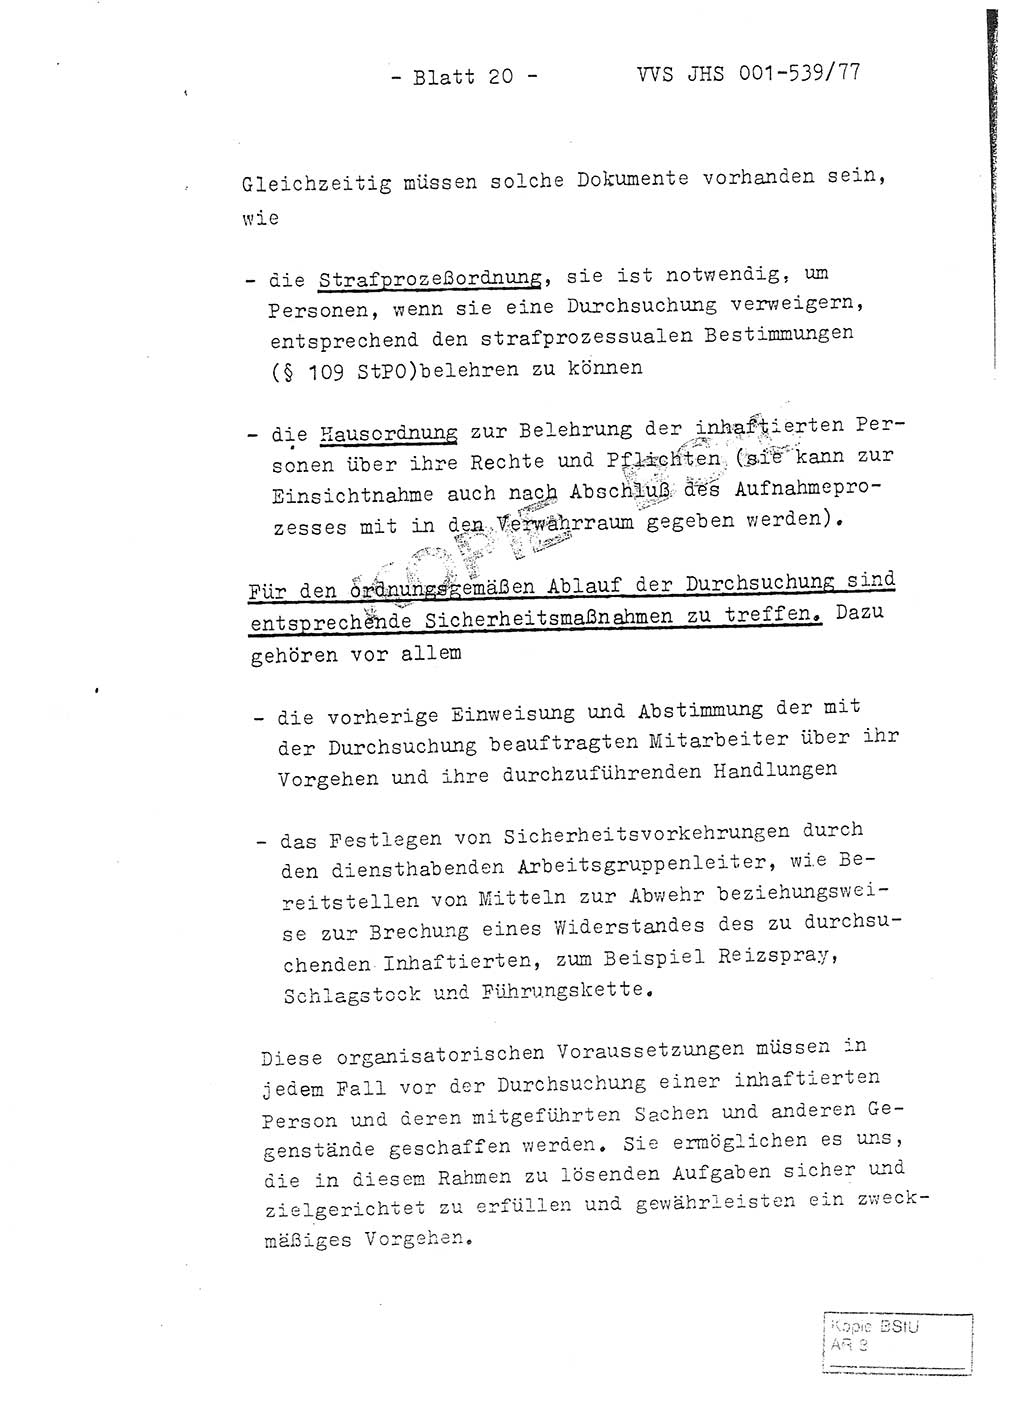 Fachschulabschlußarbeit Hauptmann Dietrich Jung (Abt. ⅩⅣ), Leutnant Klaus Klötzner (Abt. ⅩⅣ), Ministerium für Staatssicherheit (MfS) [Deutsche Demokratische Republik (DDR)], Juristische Hochschule (JHS), Vertrauliche Verschlußsache (VVS) 001-539/77, Potsdam 1978, Seite 20 (FS-Abschl.-Arb. MfS DDR JHS VVS 001-539/77 1978, S. 20)